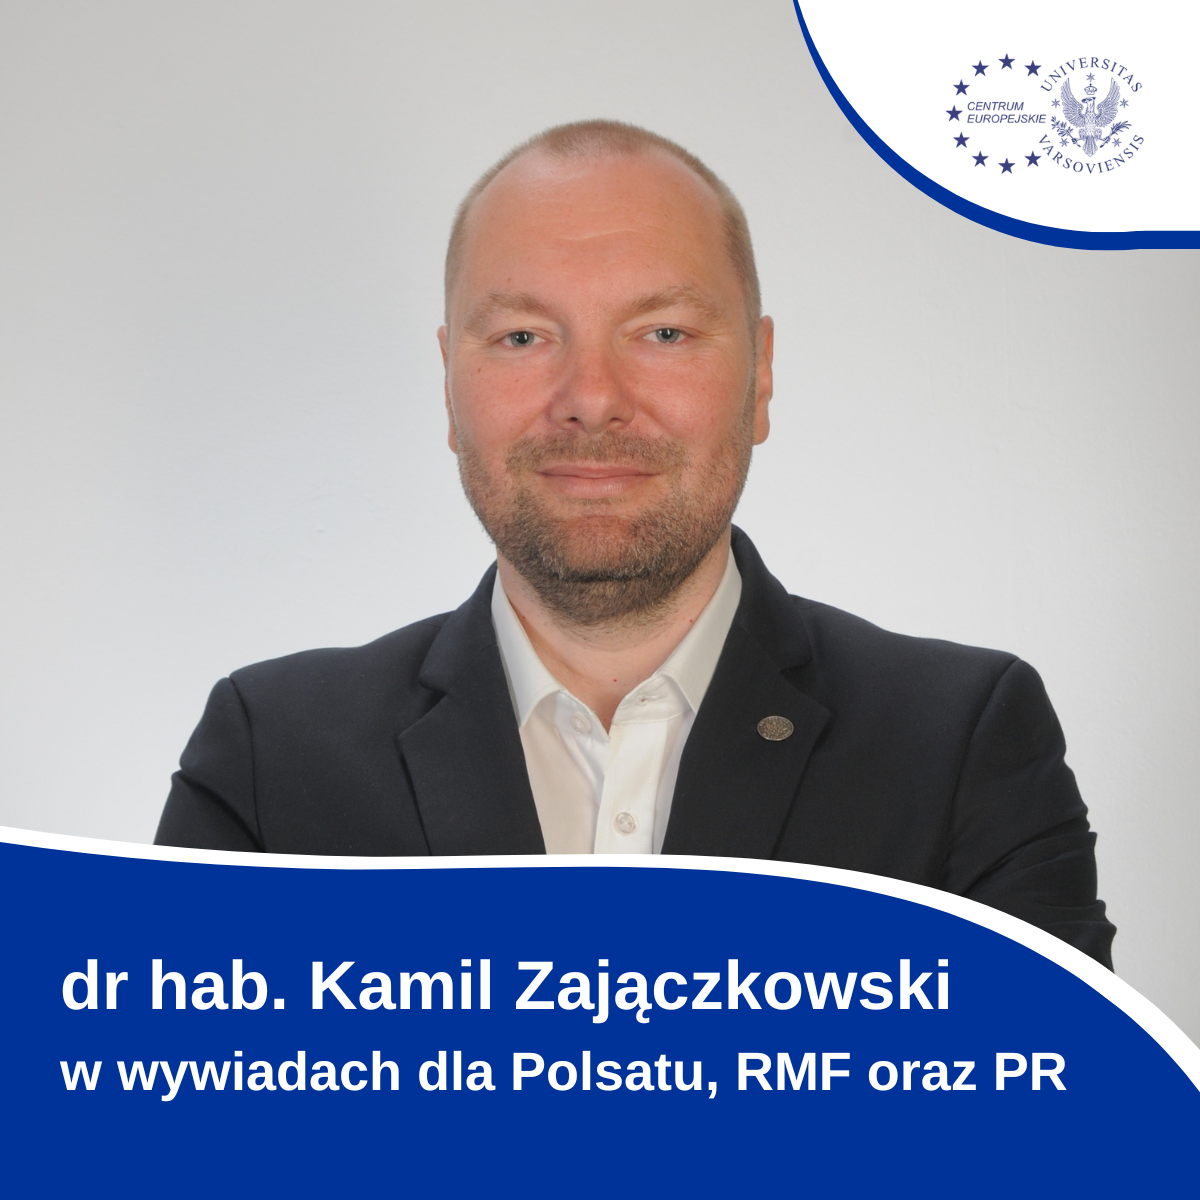 Dr Hab. Kamil Zajączkowski W Mediach   Czerwiec 202